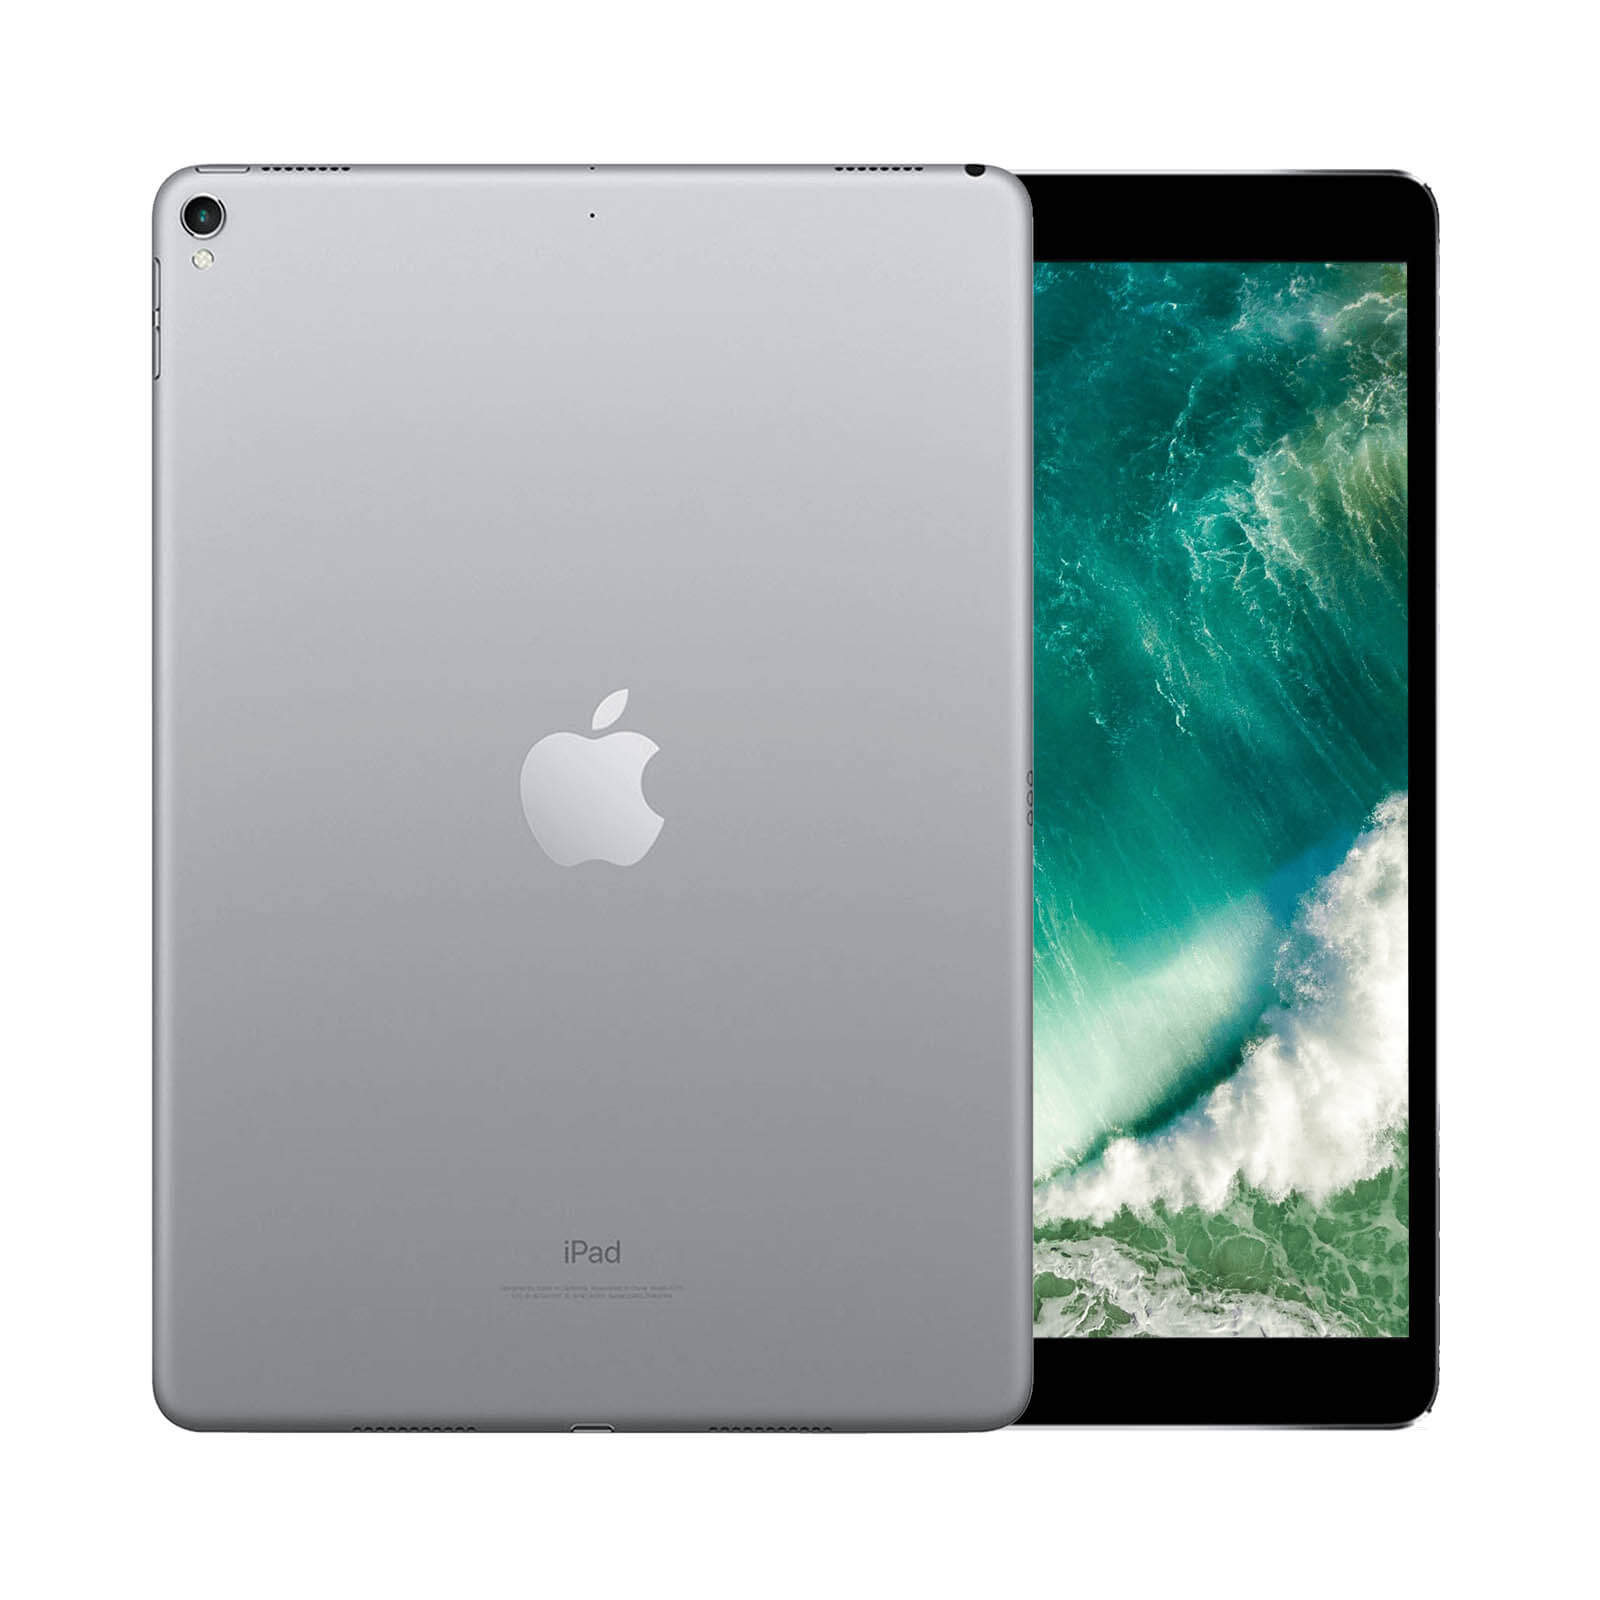 iPad Pro 10.5 Inch 256GB Gold Very Good - WiFi